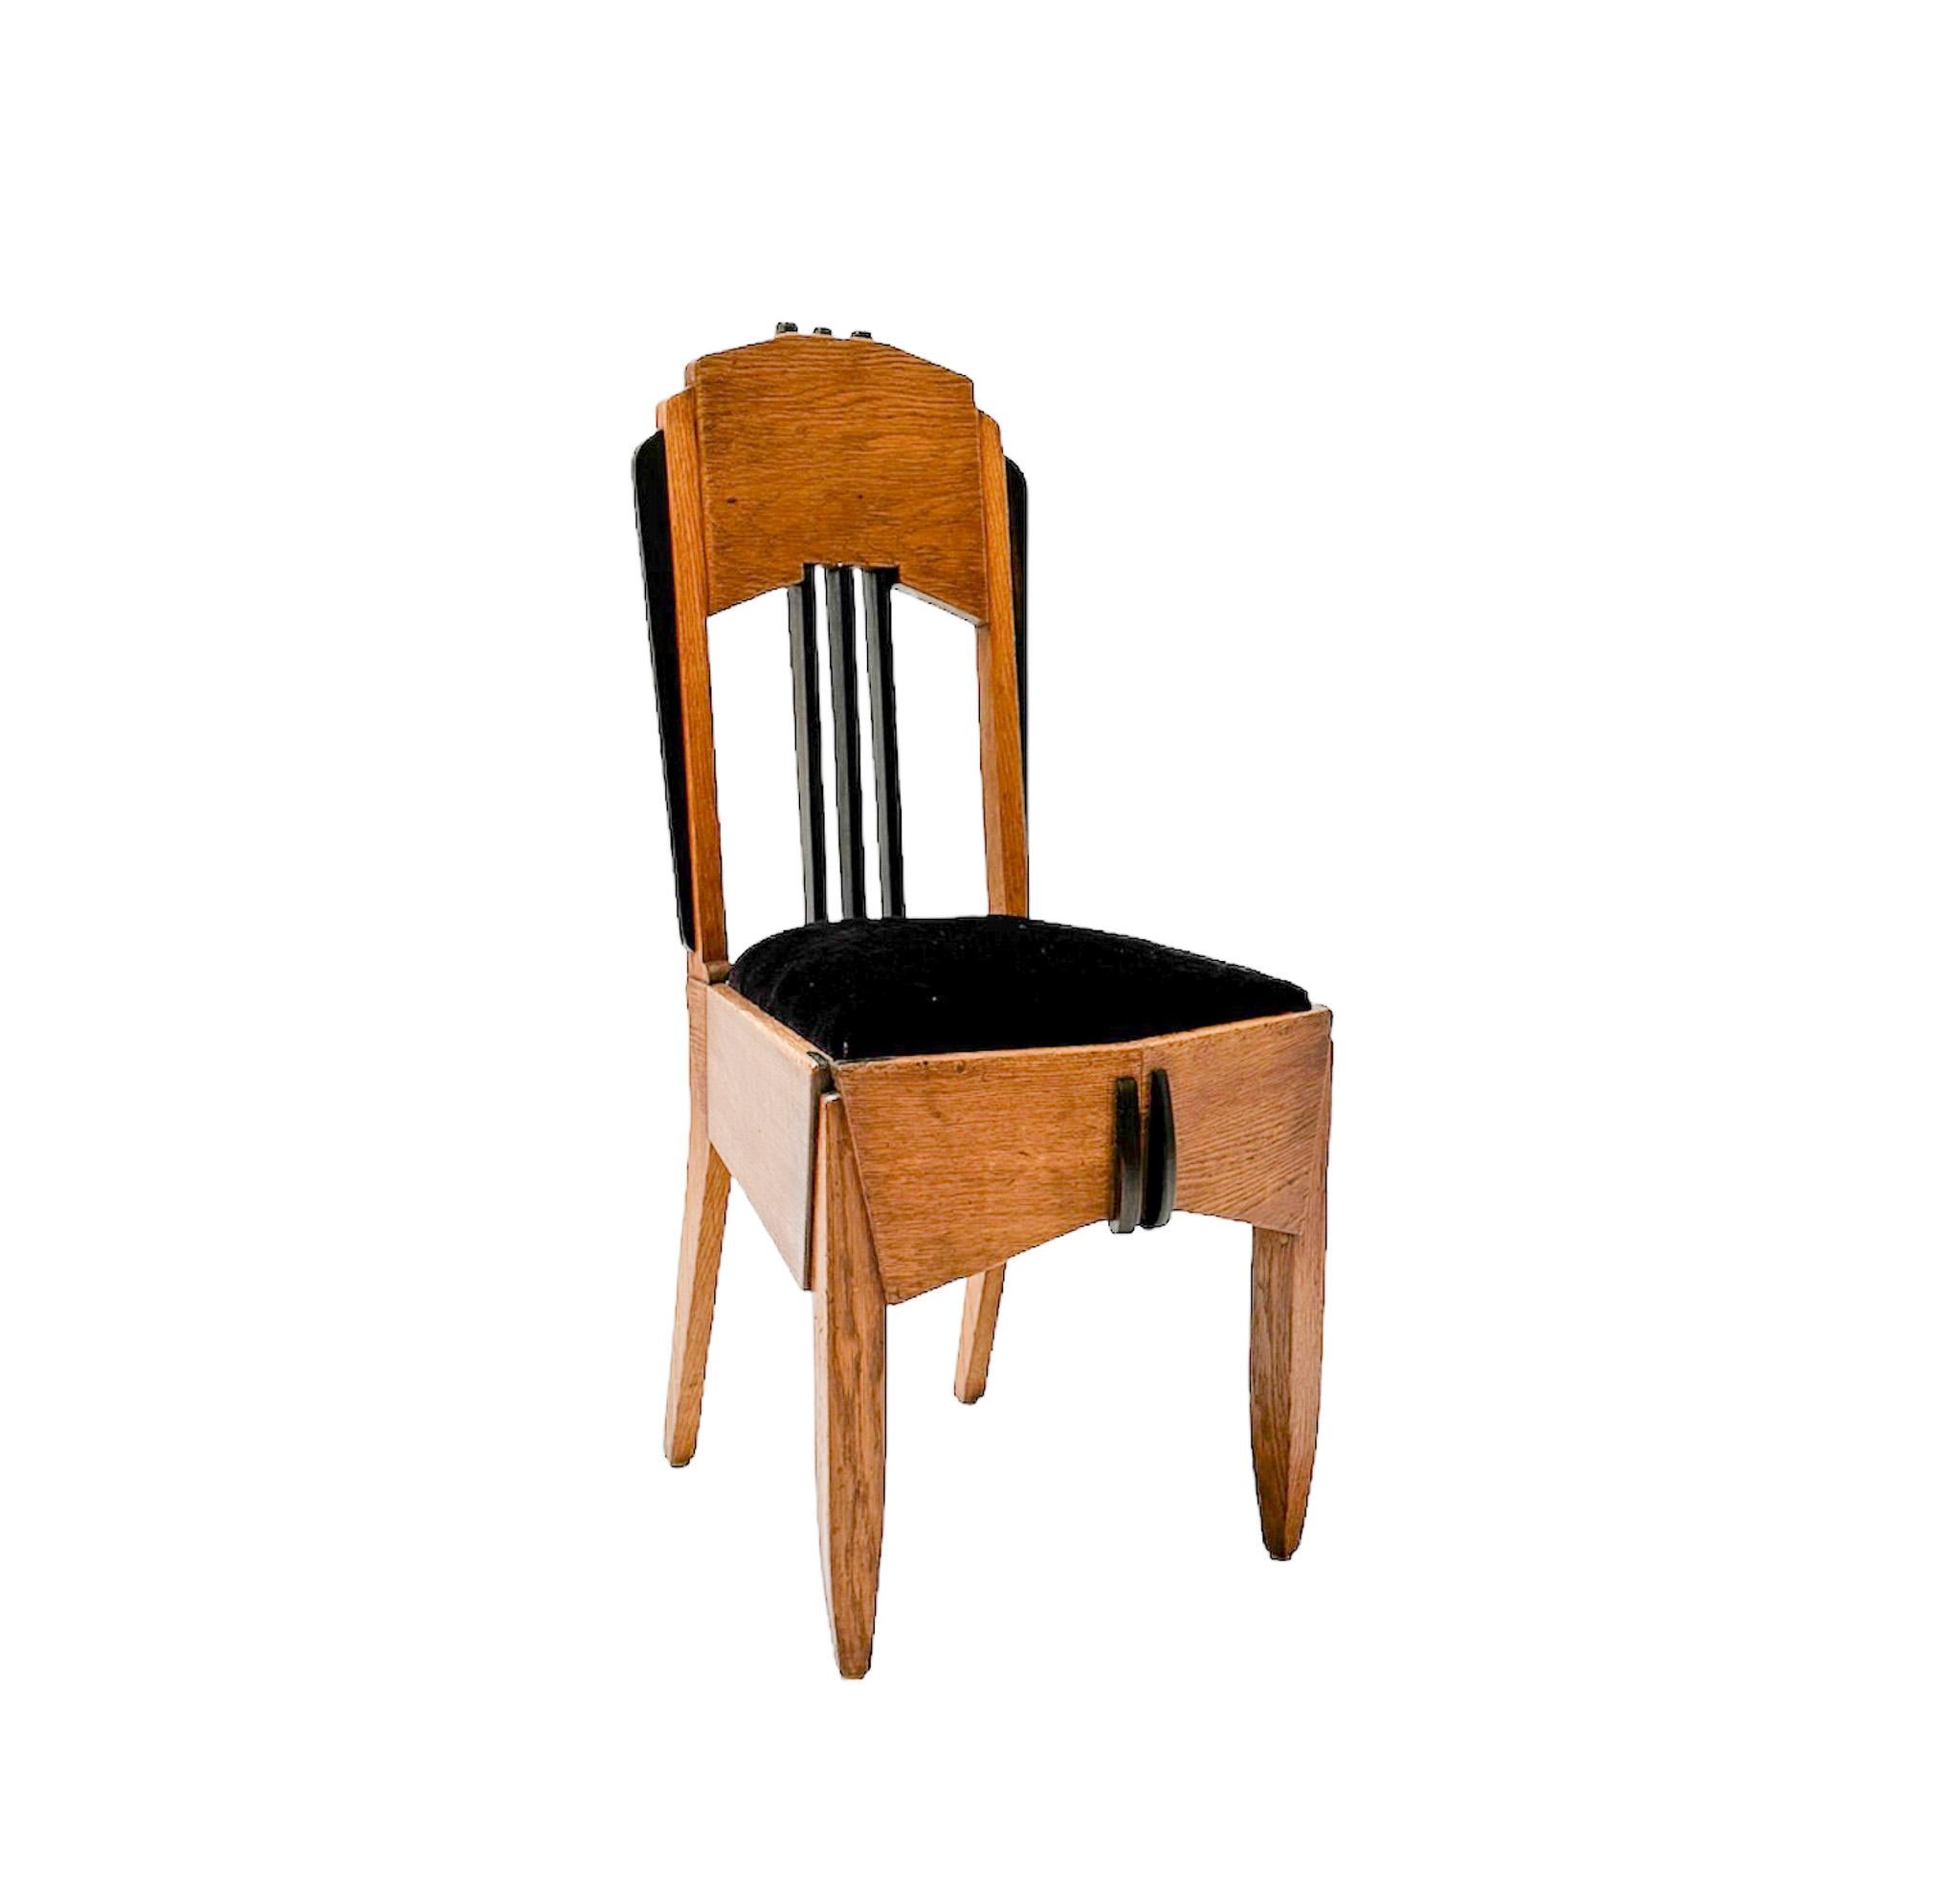 Magnifique et rarissime chaise d'appoint Art déco de l'école d'Amsterdam.
Design/One.
Un design néerlandais saisissant des années 1920.
Cadre en chêne massif avec éléments d'origine en ébène de macassar massif.
Le siège, qui peut être retiré, a